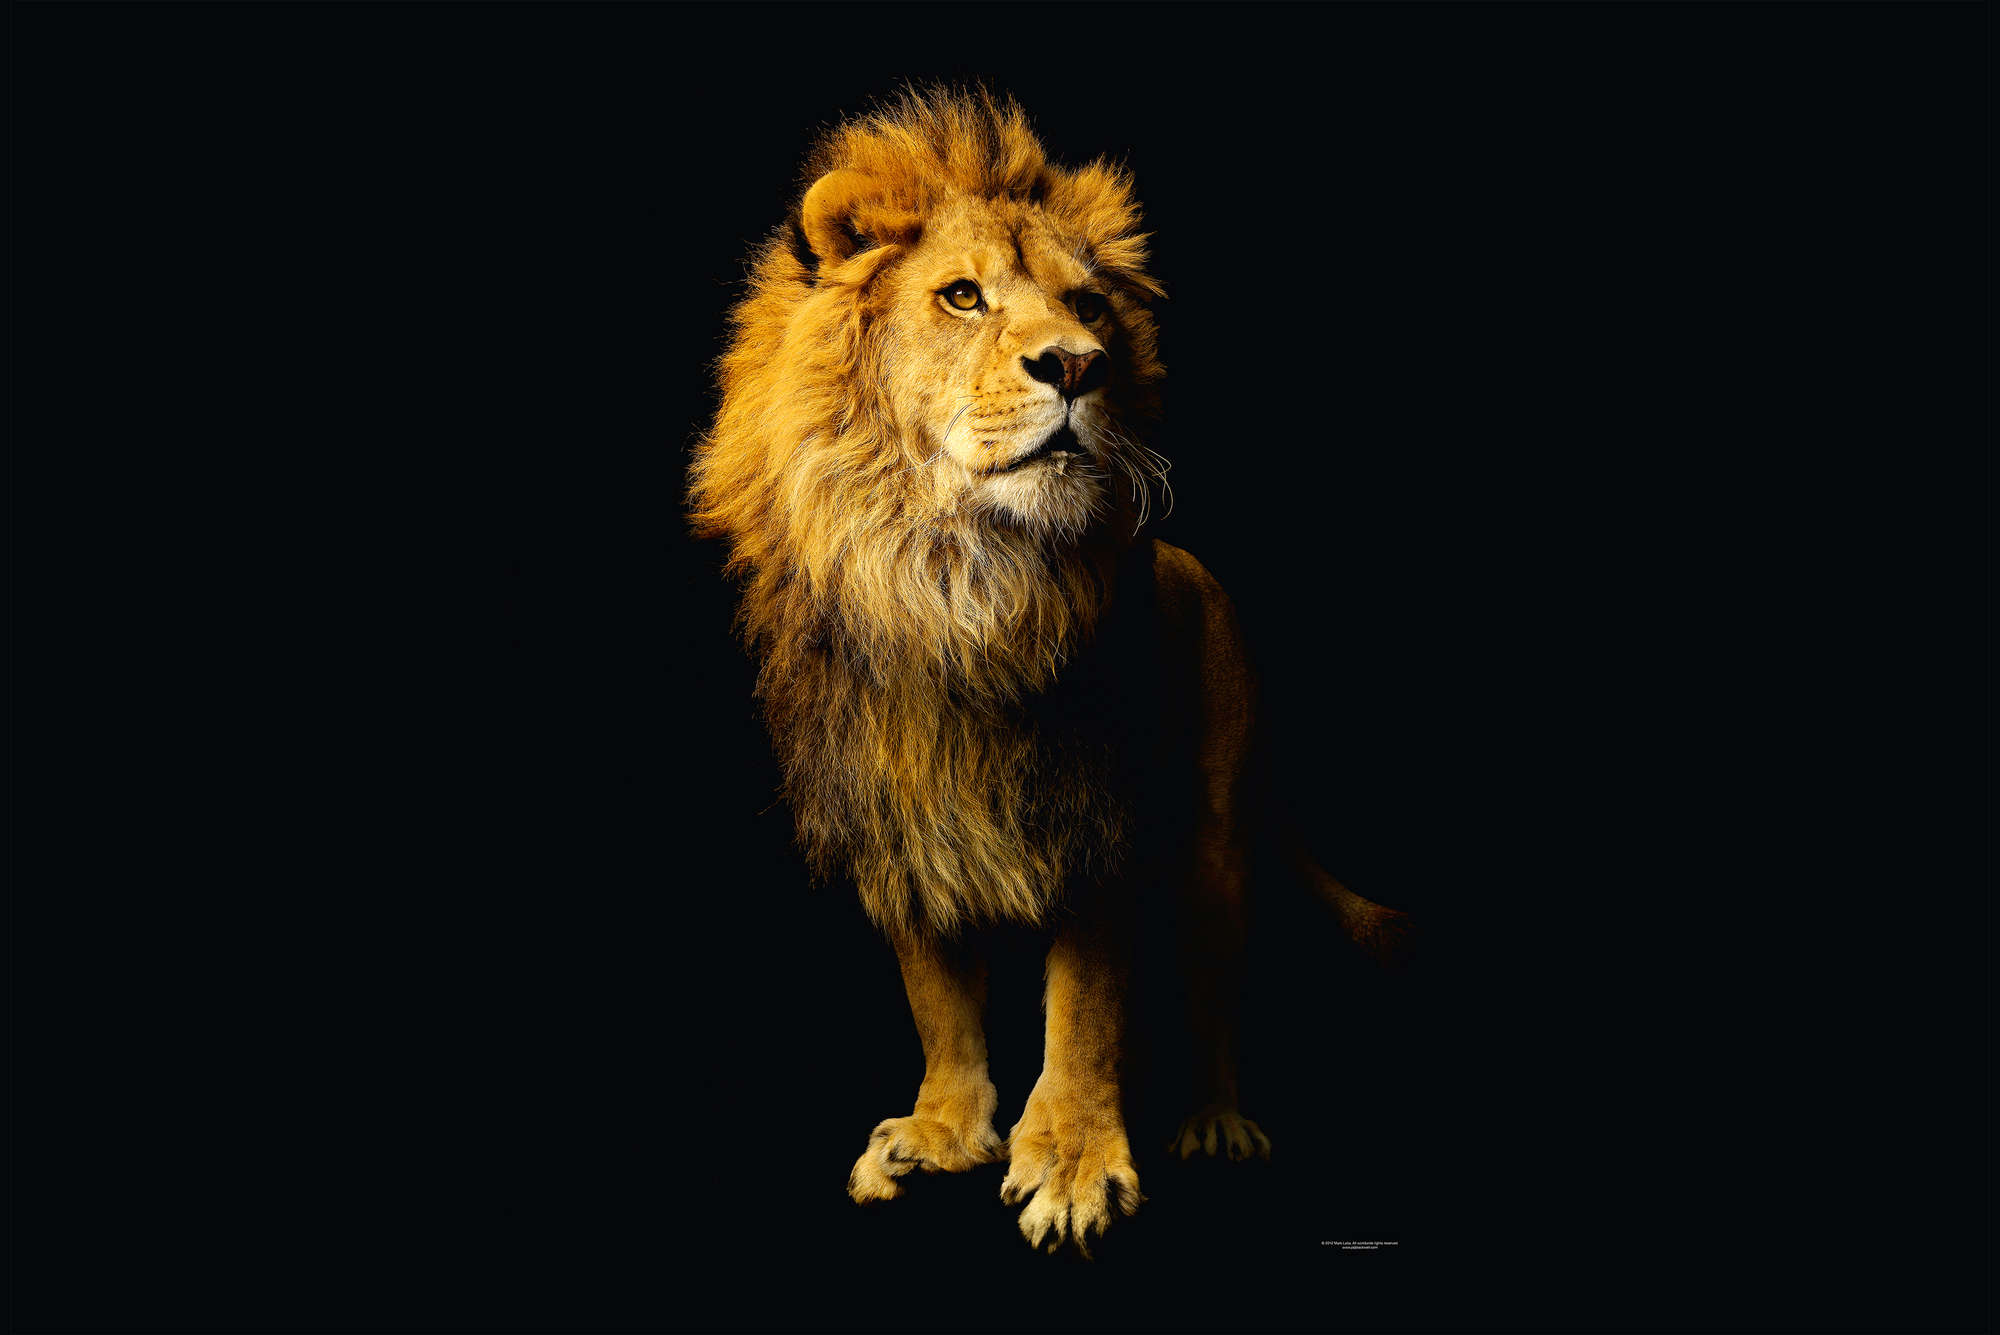             Lion - papier peint avec portrait d'animal
        